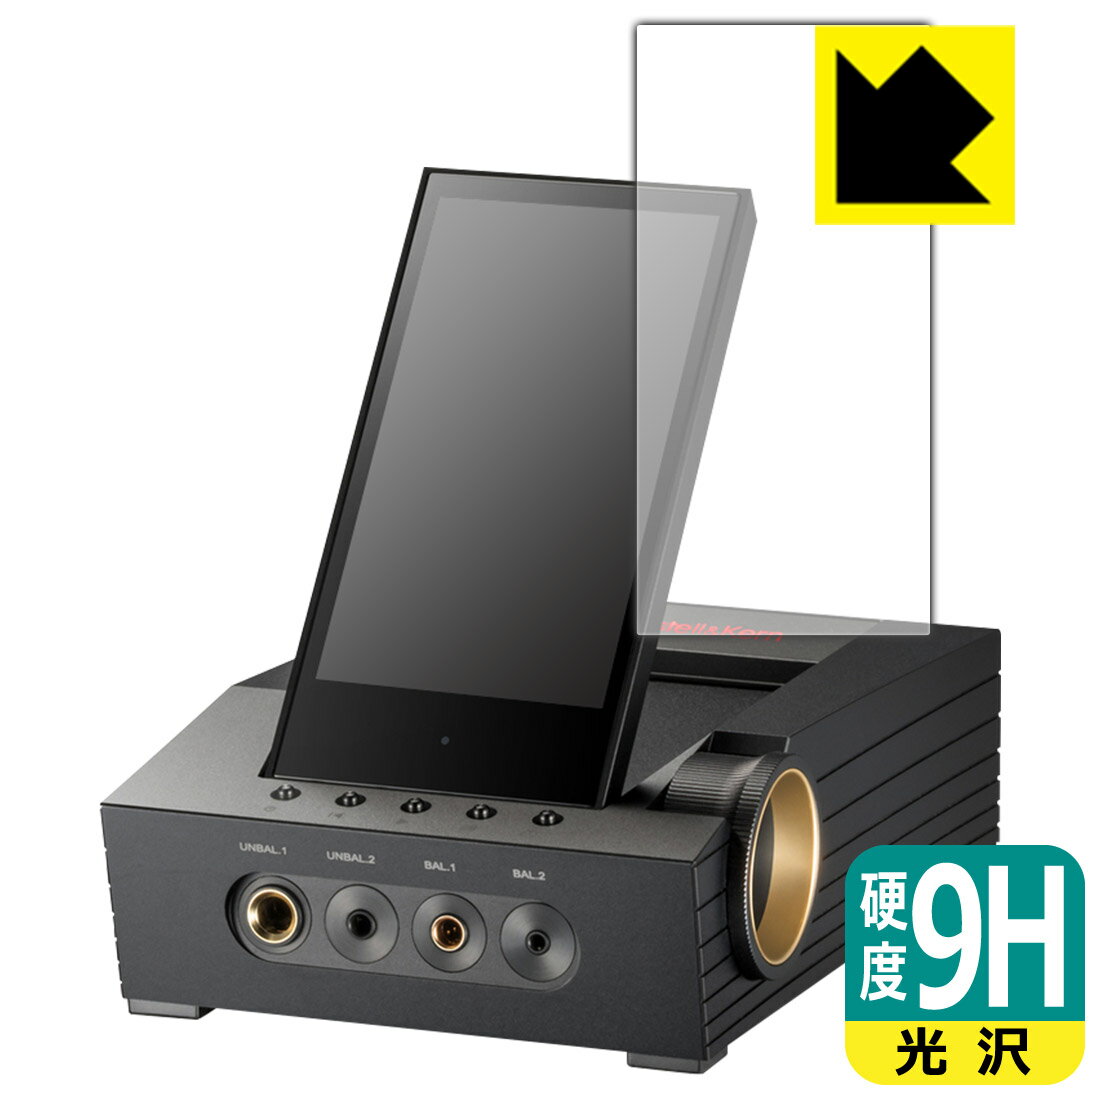 PDA工房 Astell&Kern ACRO CA1000T対応 9H高硬度[光沢] 保護 フィルム 日本製 自社製造直販